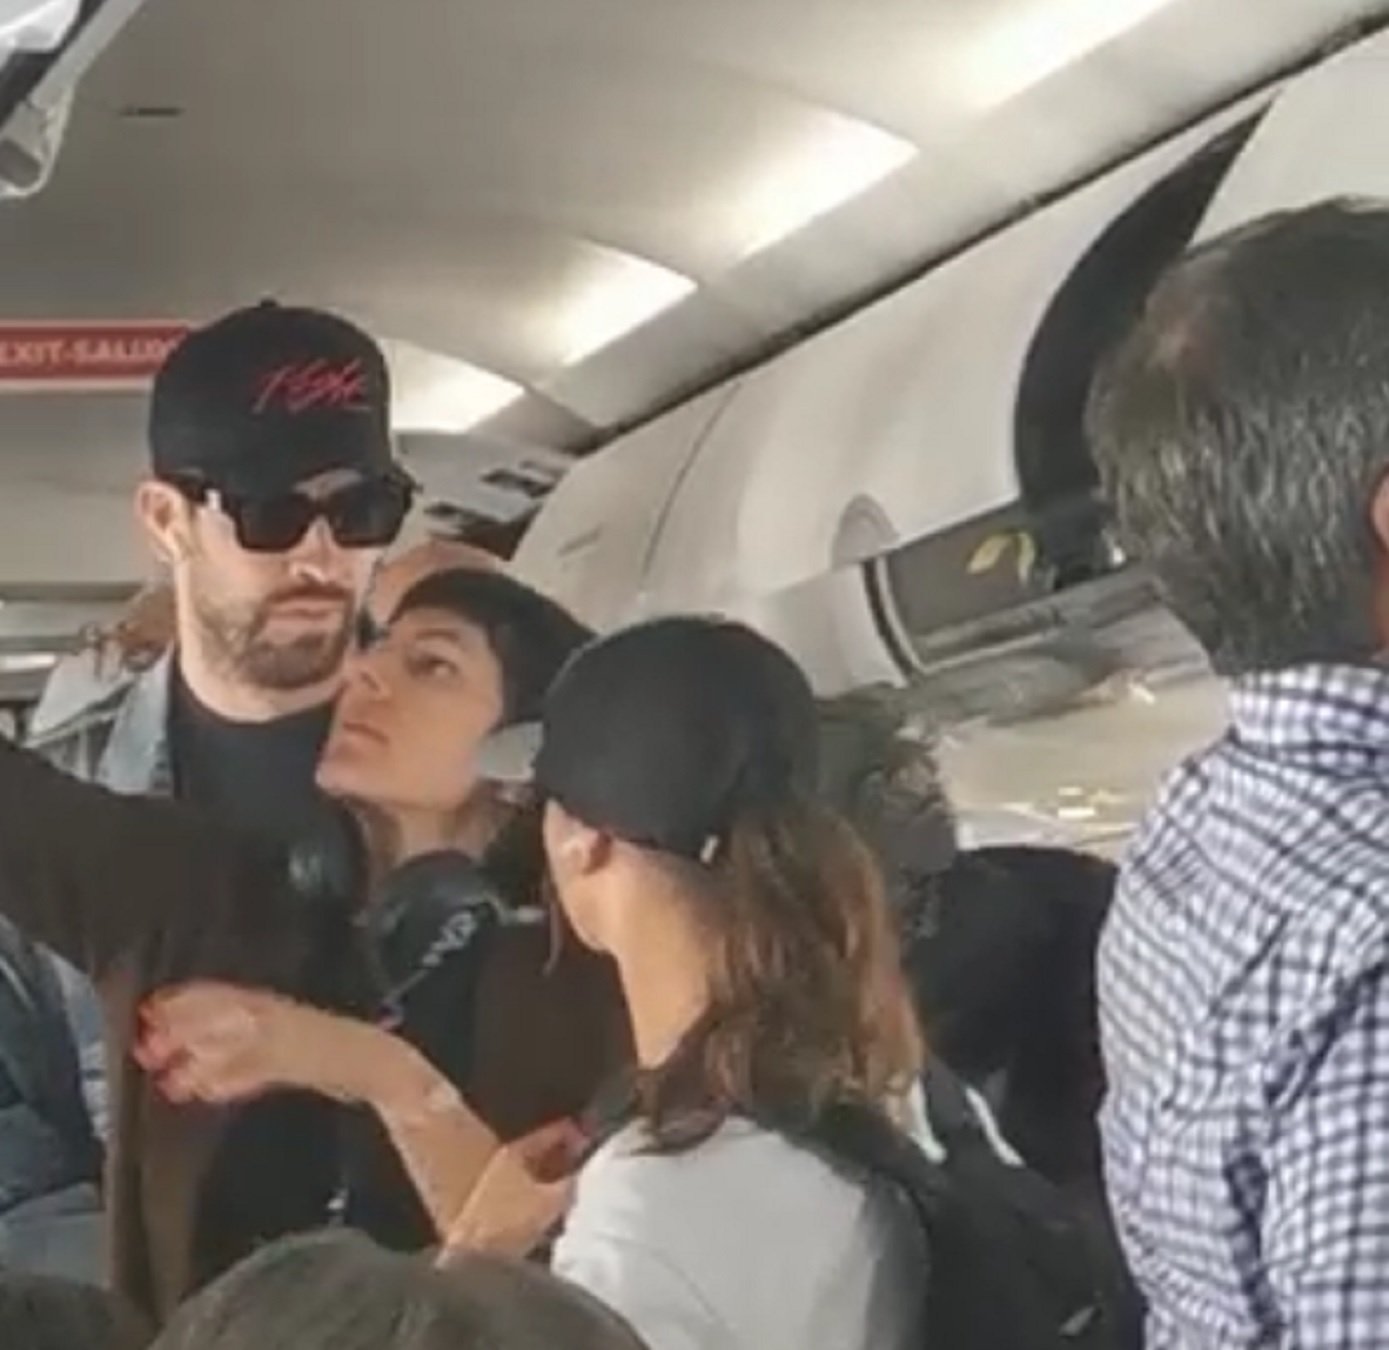 EXCLUSIVA Gerard Piqué apretado en Vueling con maleta personalizada: destino bomba